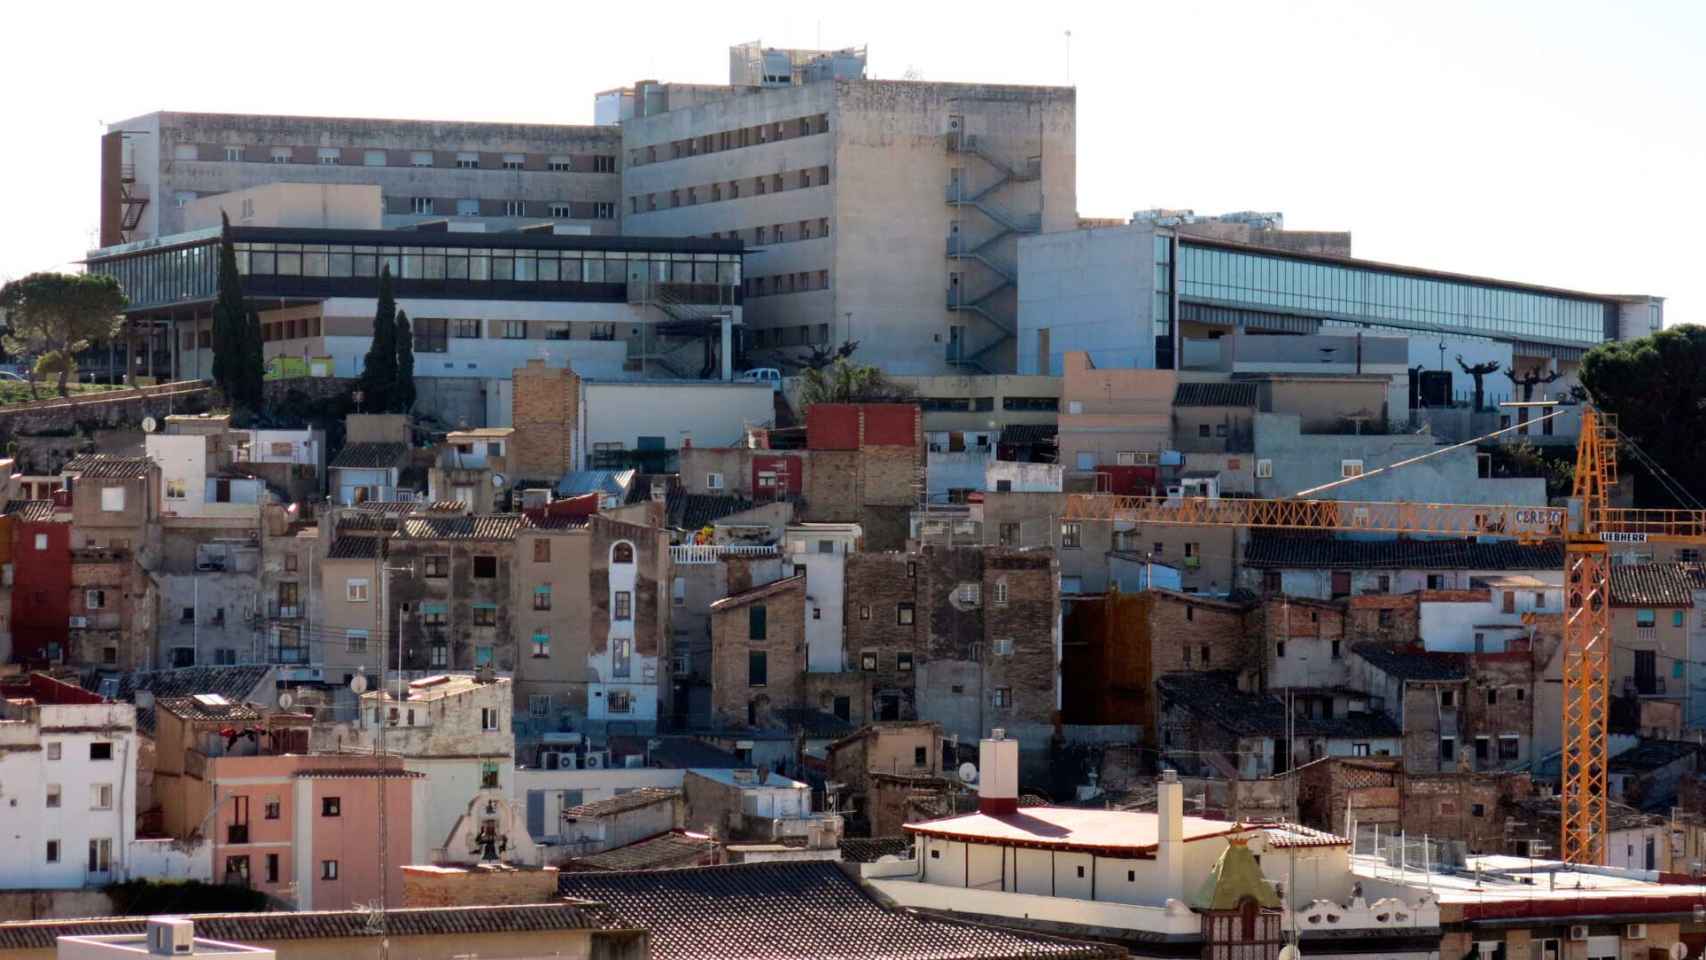 El Hospital Tortosa Verge de la Cinta, cuya ampliación no puede servir de excusa para no construir un nuevo centro, según los vecinos del municipio